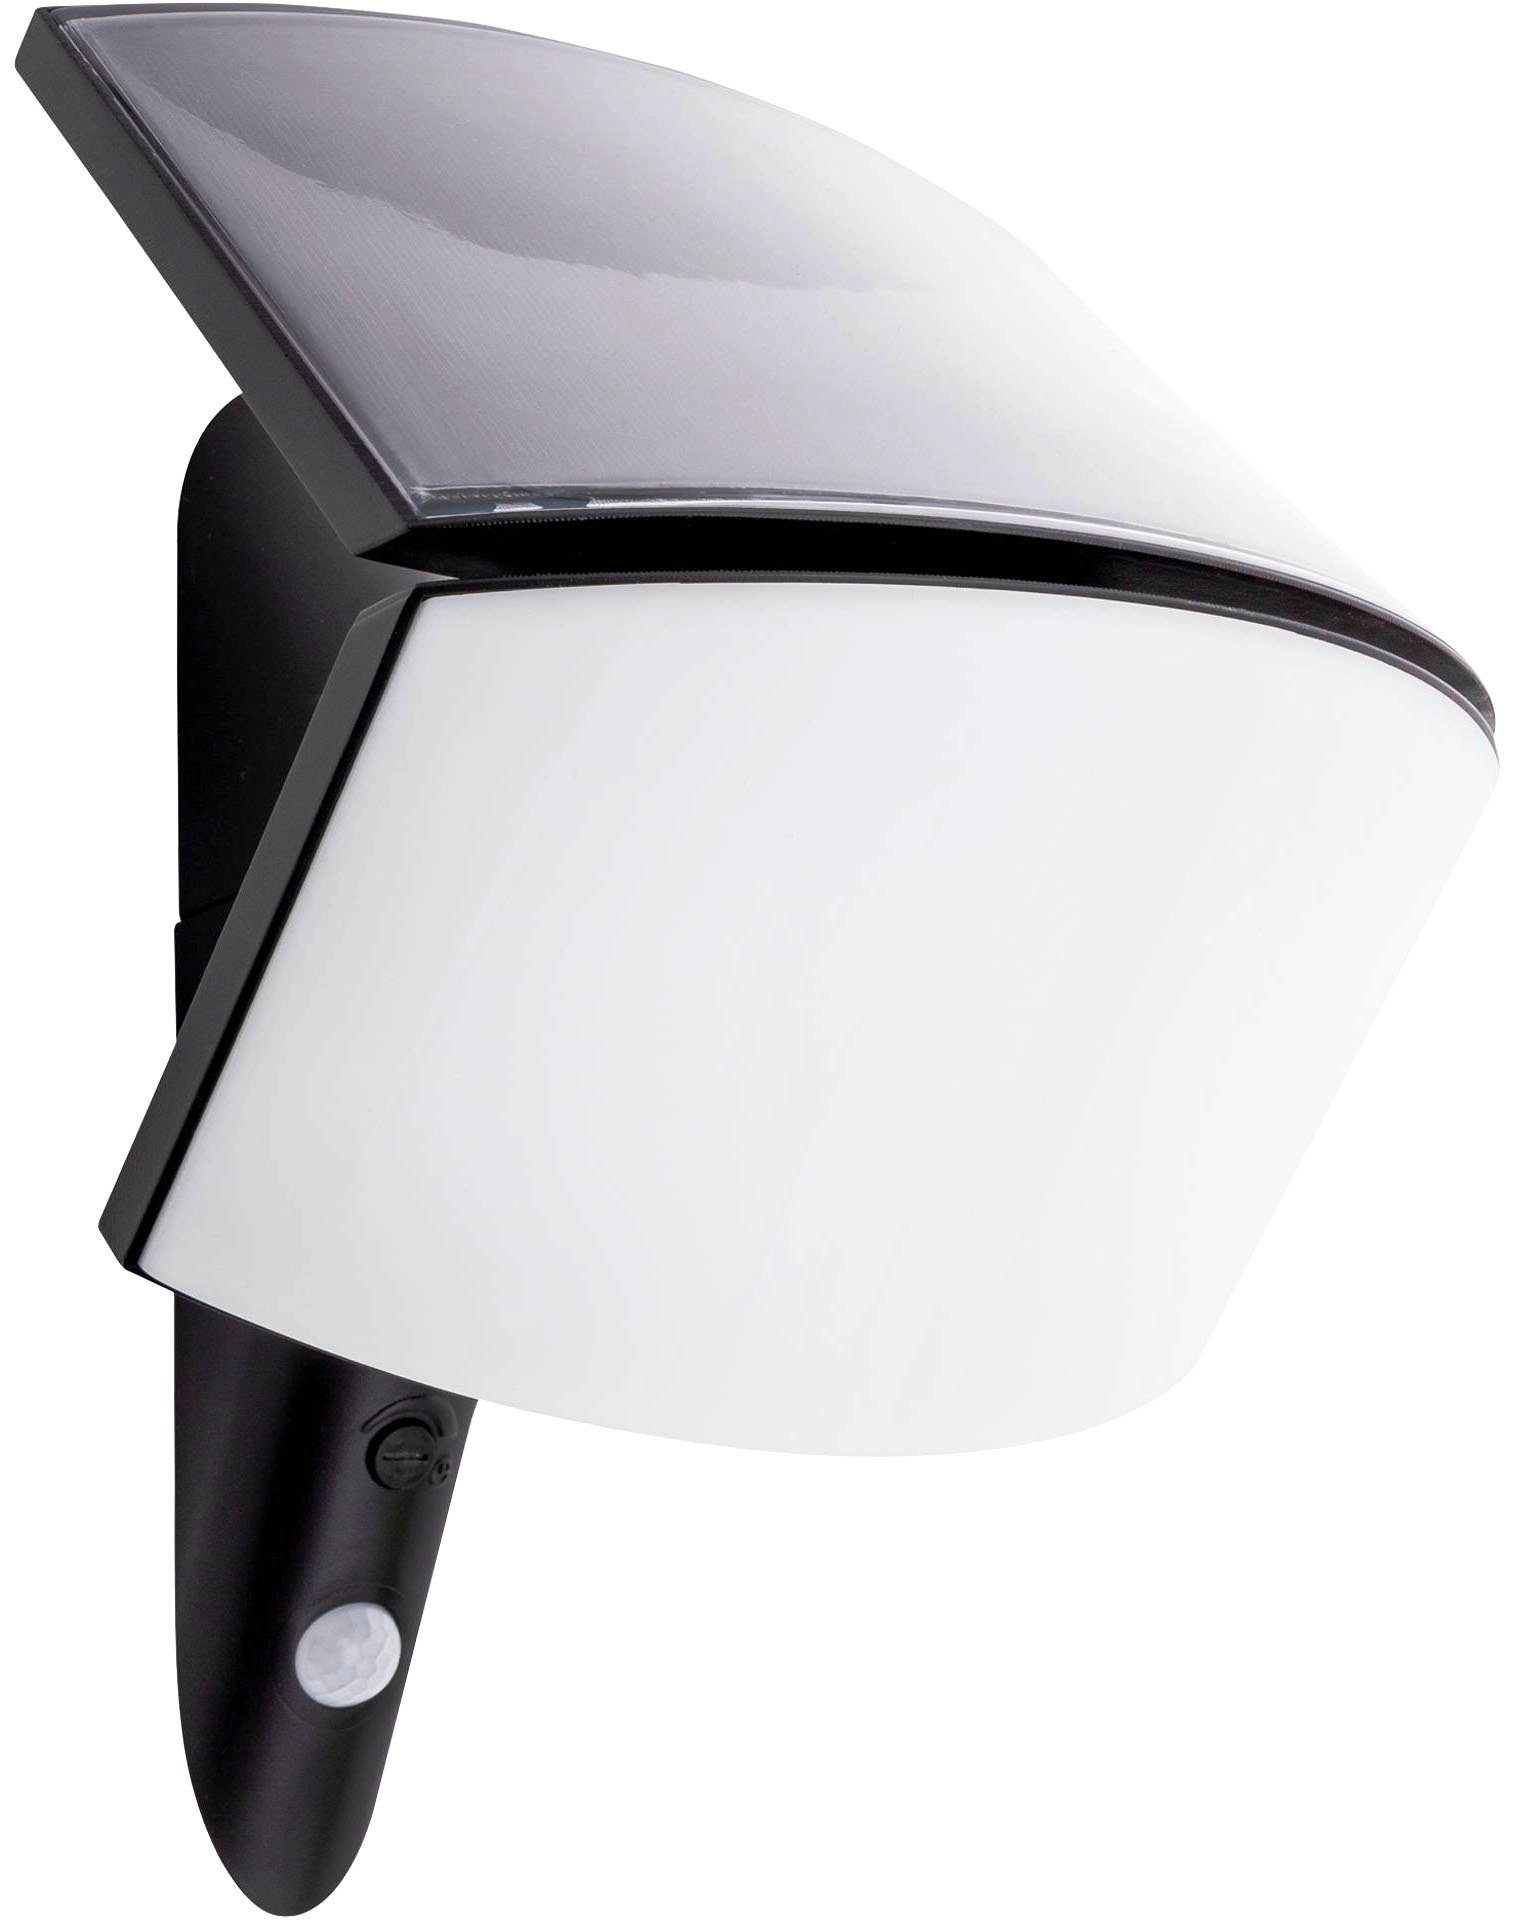 AUTO Scheinwerfer Kopf Lampe Schalter Licht Sensor Modul Upgrade